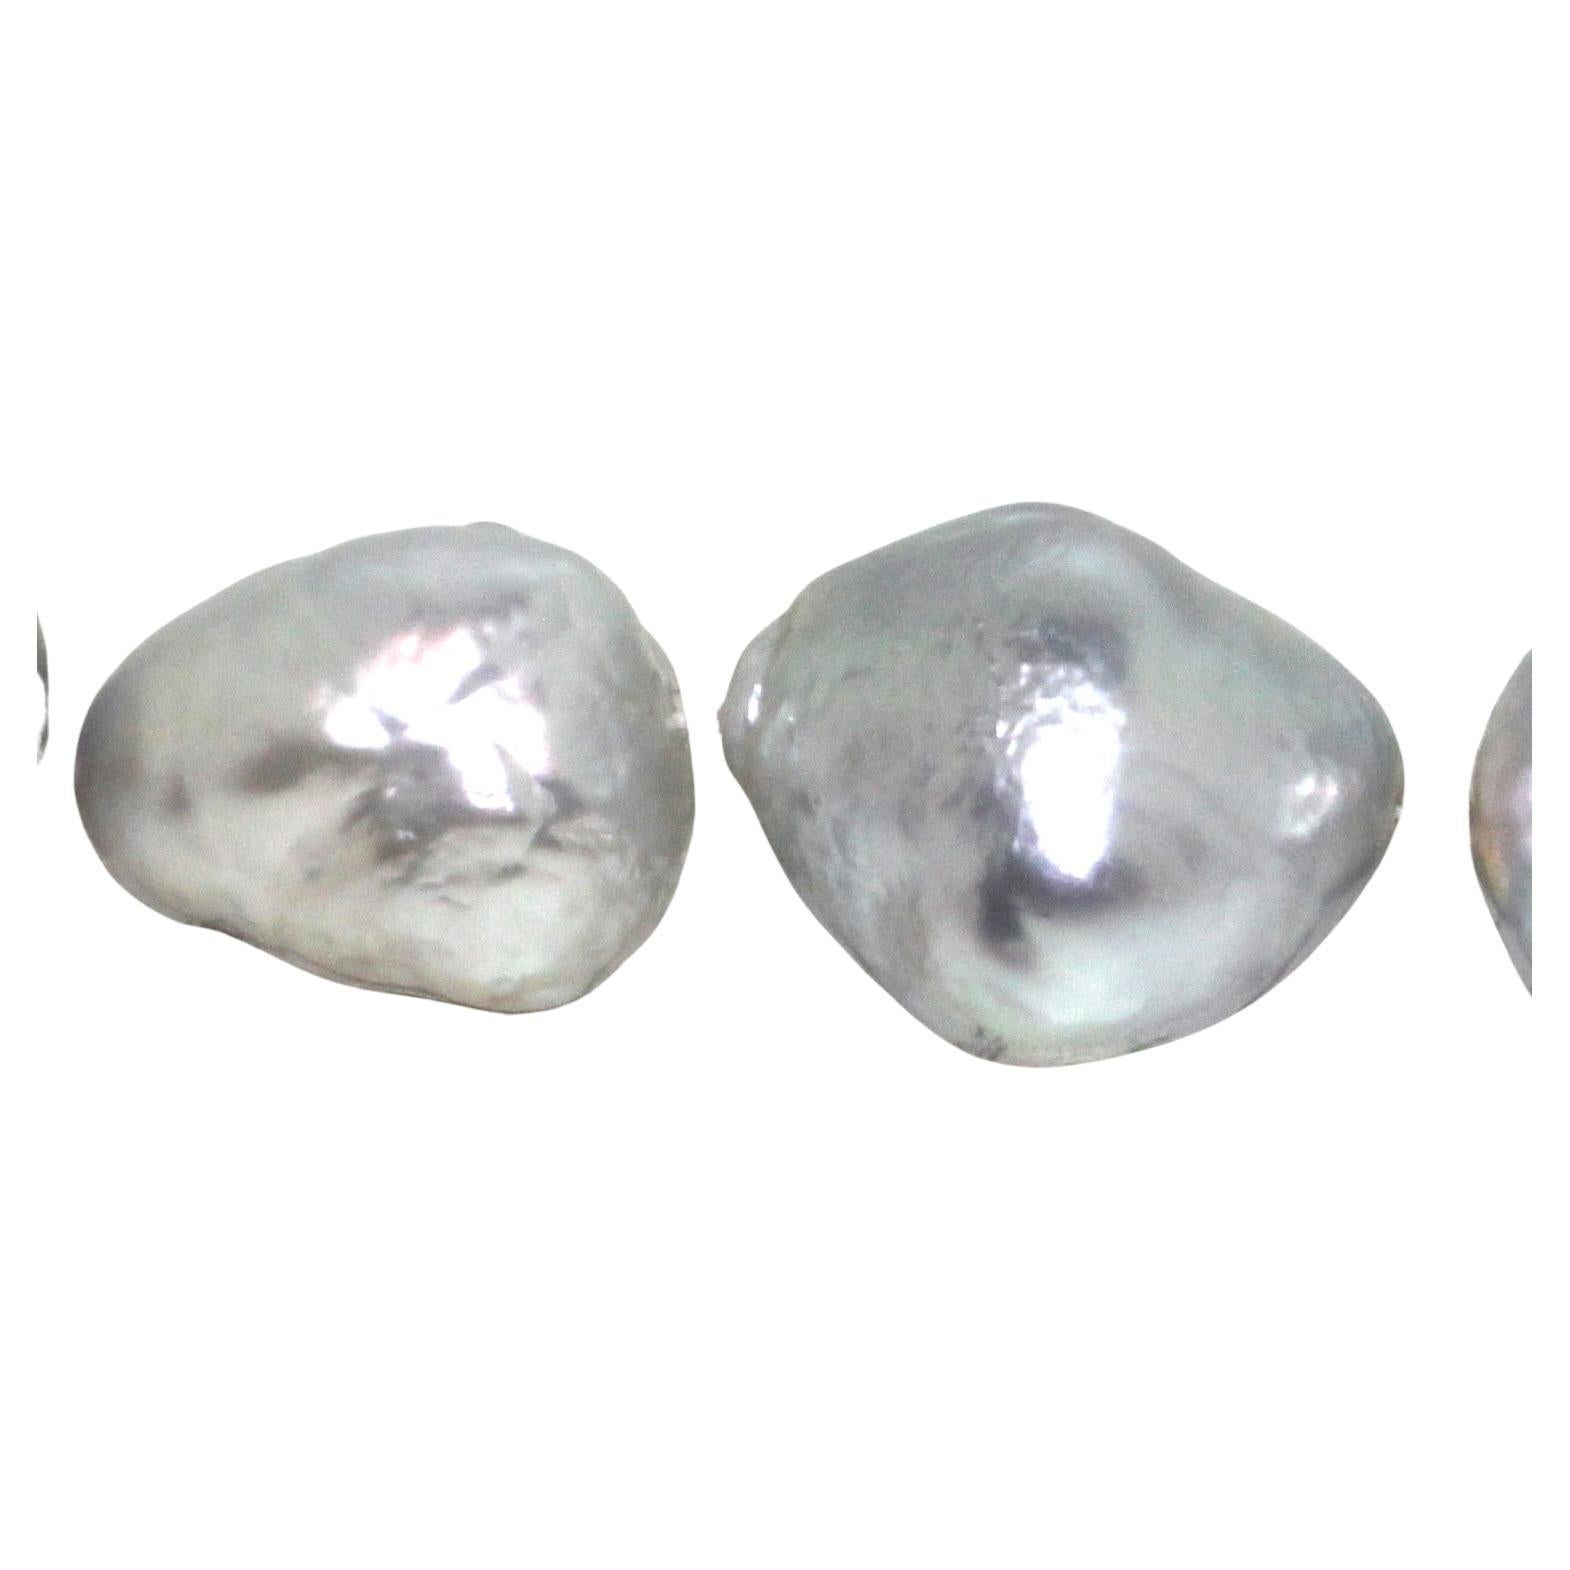 Hakimoto By Jewel Of Ocean Collier à brin de mer du Sud 18K
Or blanc 18K  Avec 1,72 charrette de diamants
Poids (g) : 179
Perle des mers du Sud de culture 
Taille de la perle : (30-32)X(17-20)mm 
Forme de la perle : Baroque 
Couleur de la